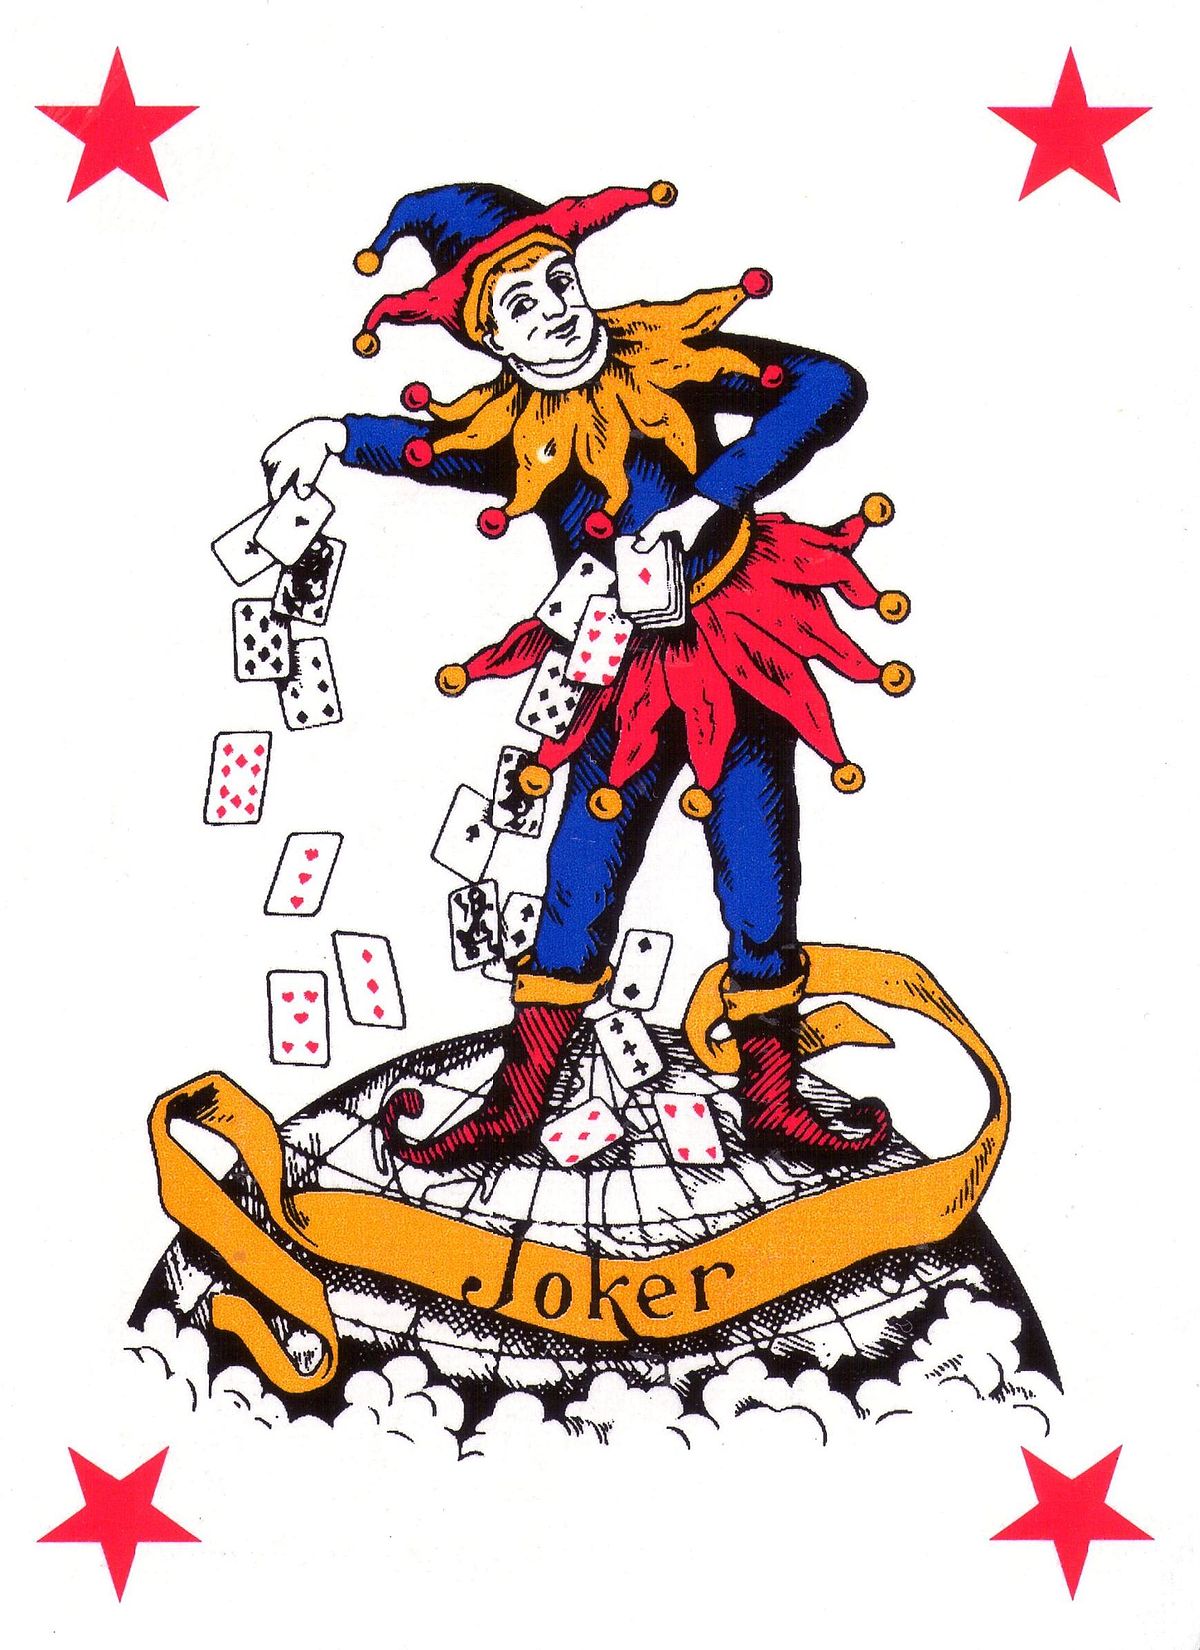 Joker (playing card) - Wikipedia